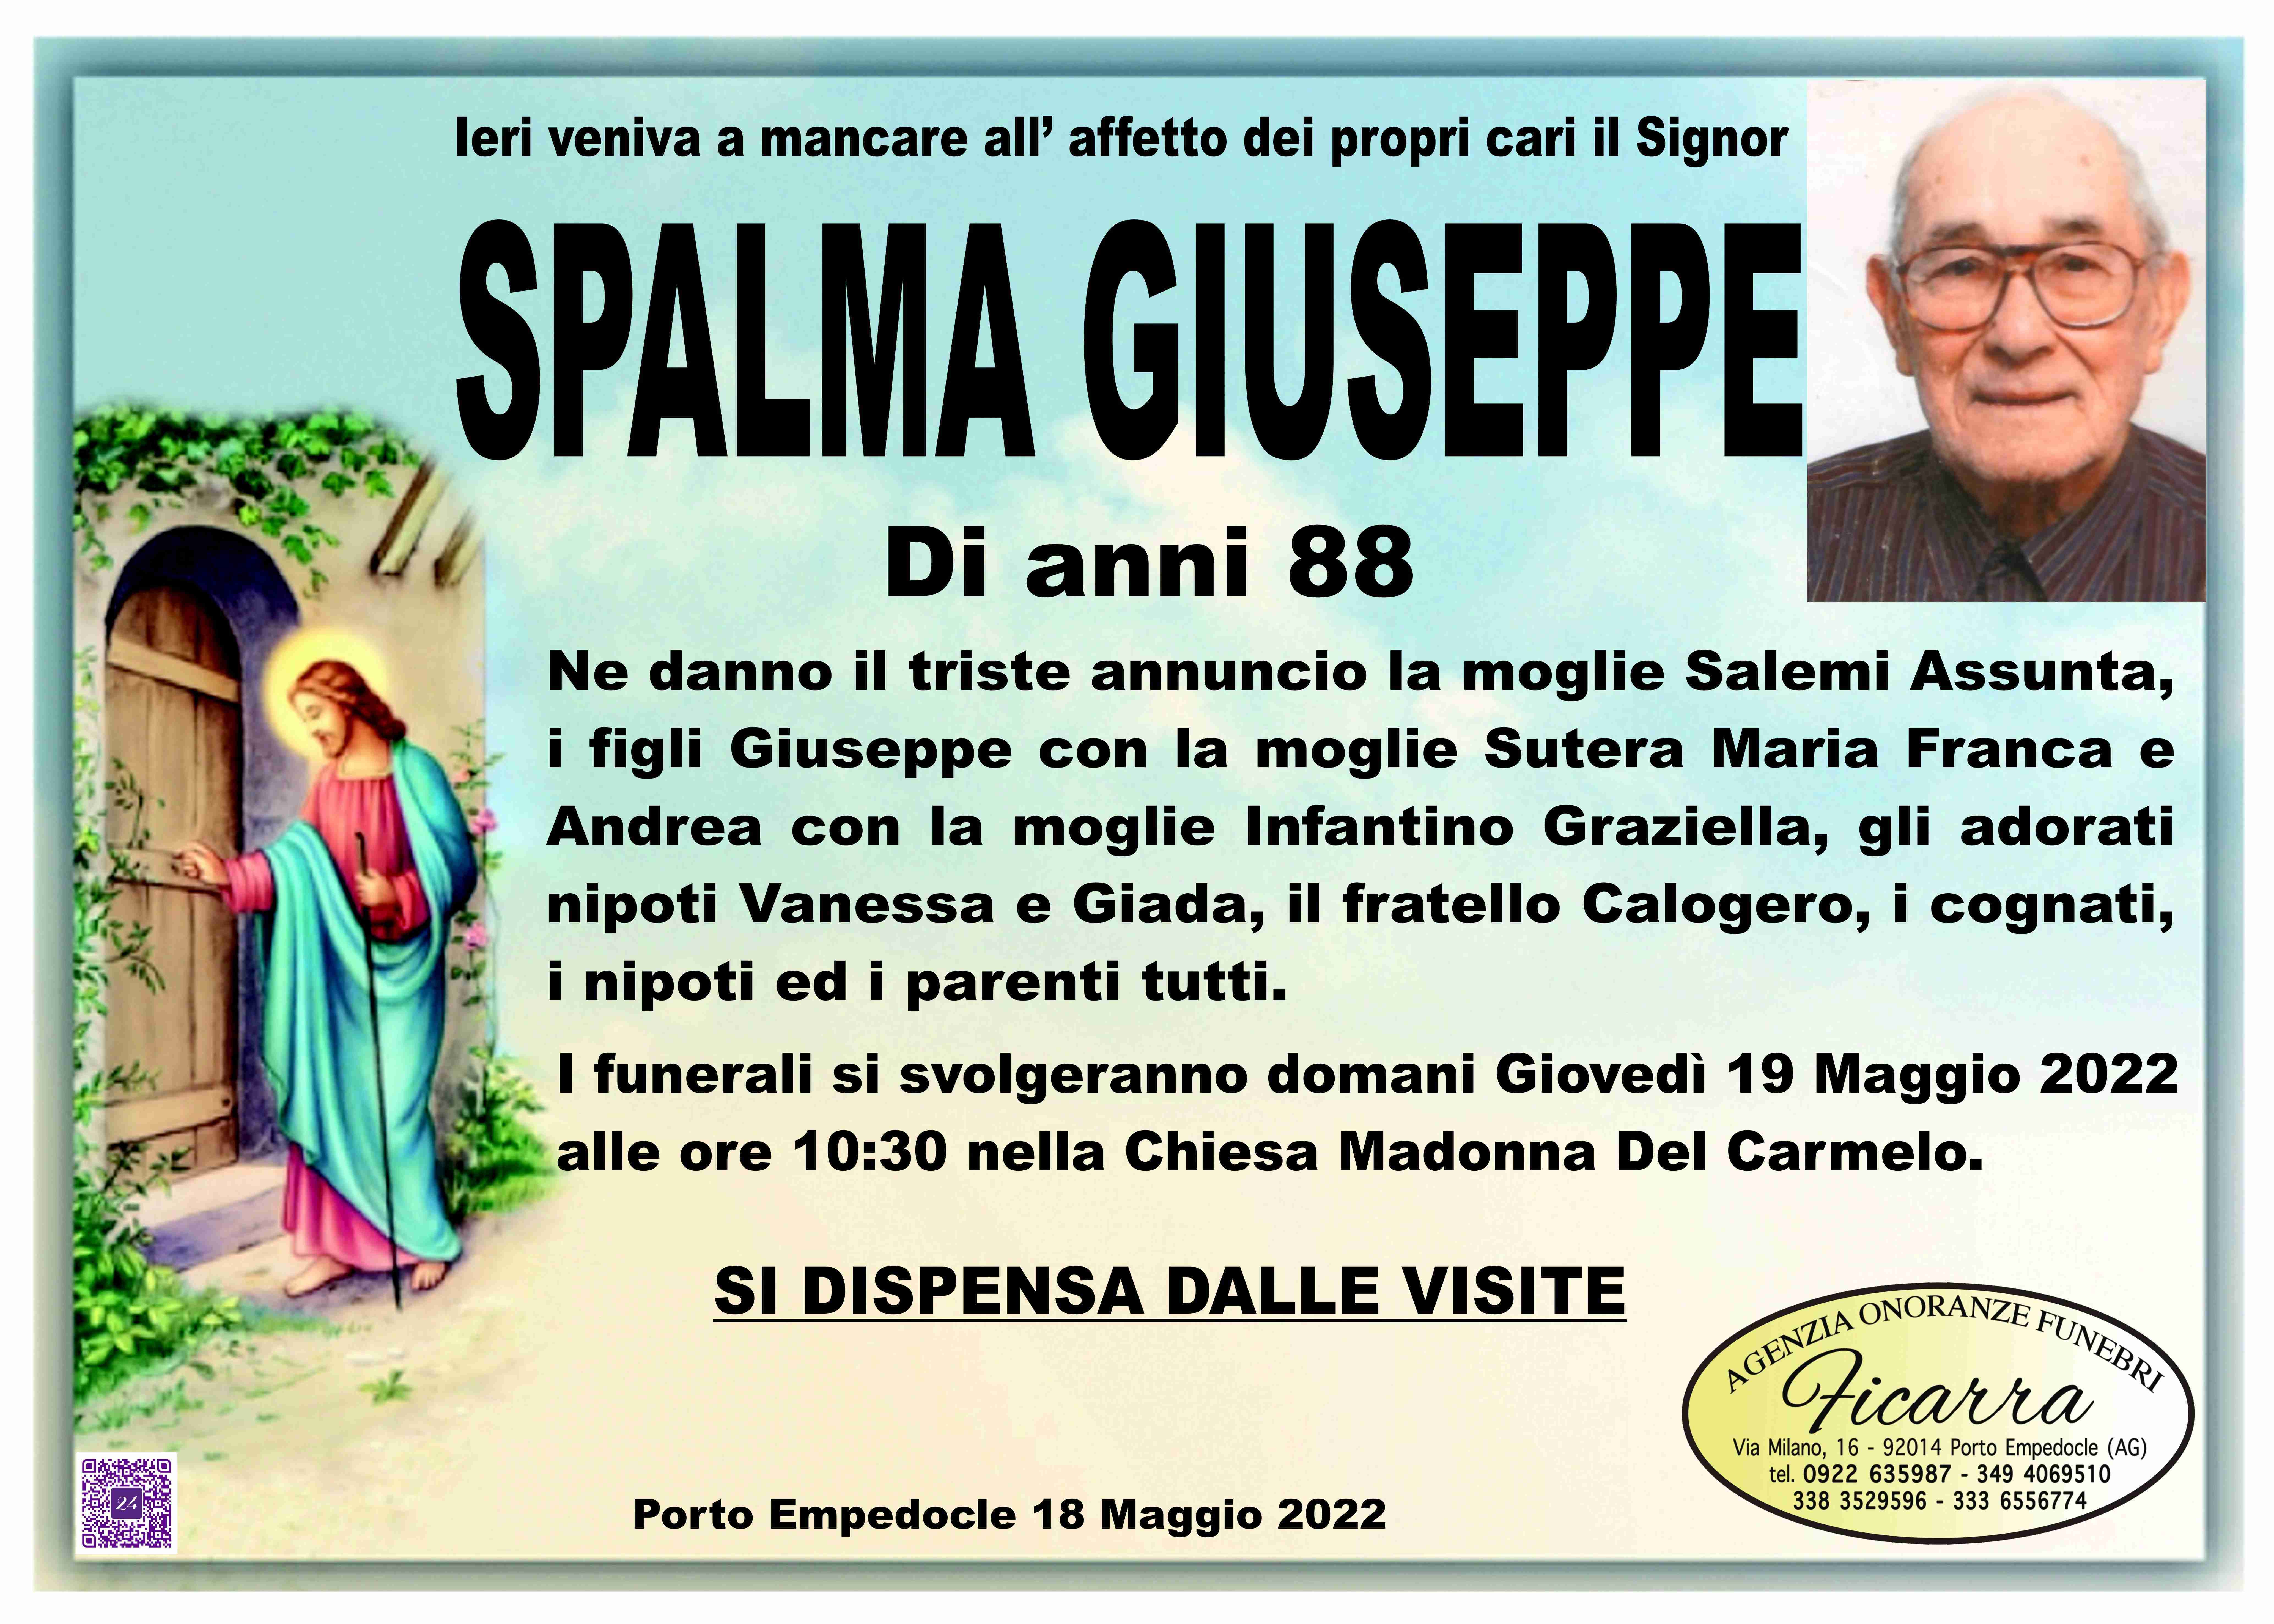 Giuseppe Spalma